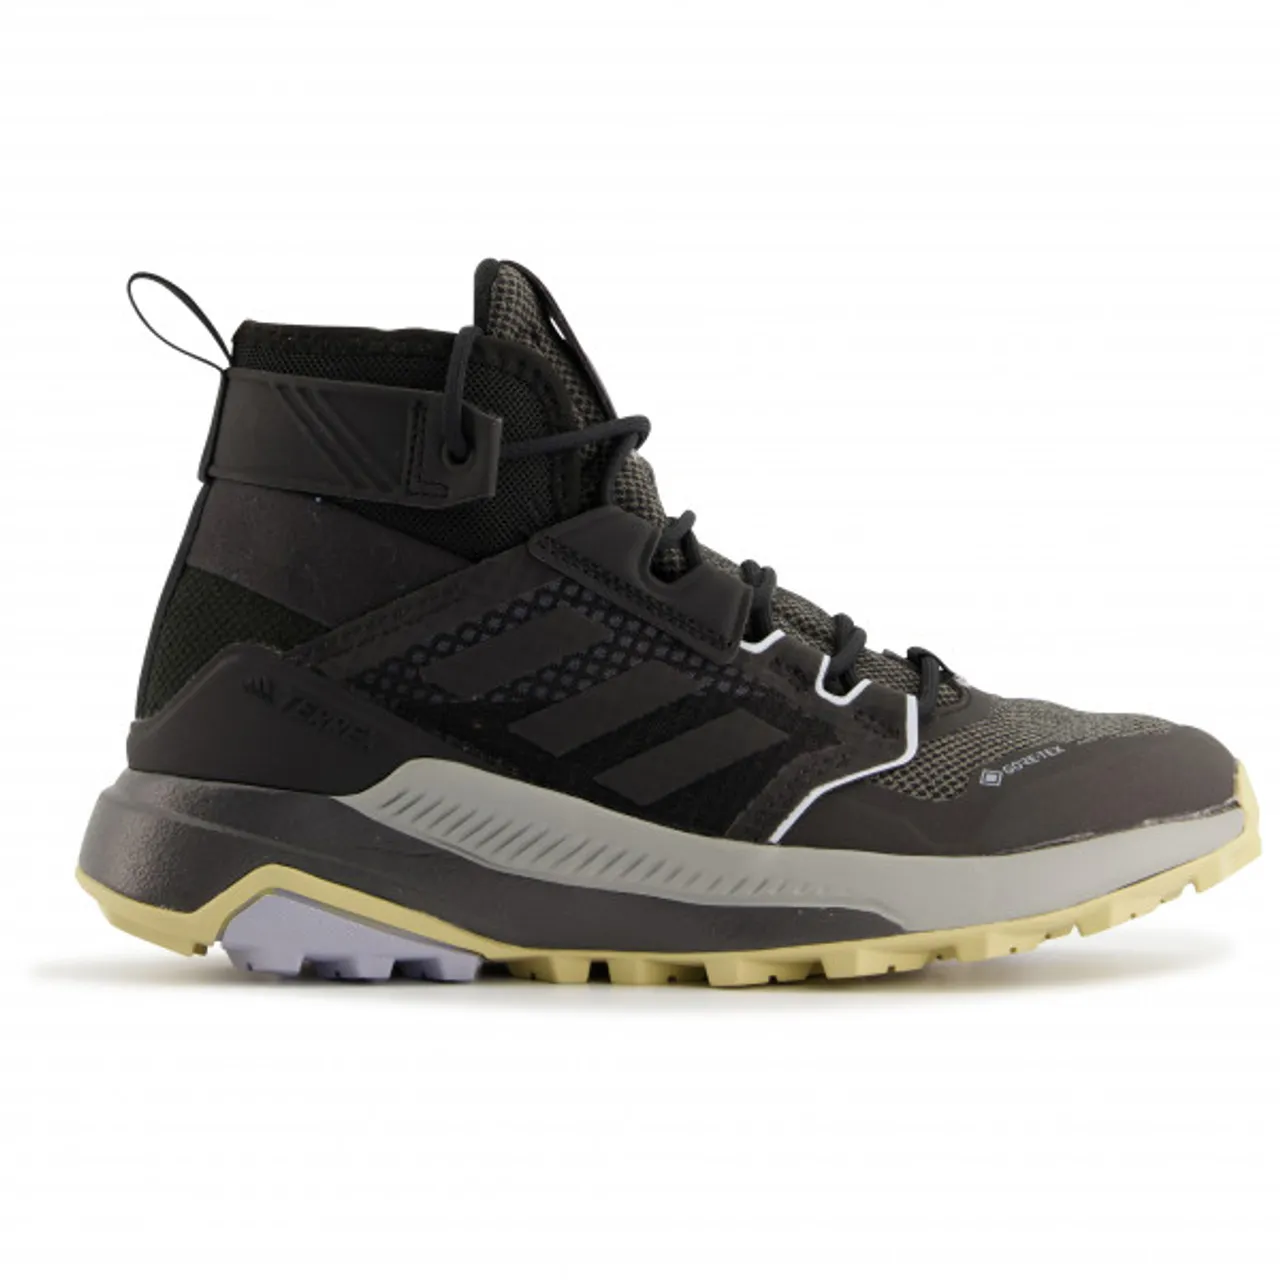 adidas Terrex - Women's Terrex Trailmaker Mid GTX - Walking boots